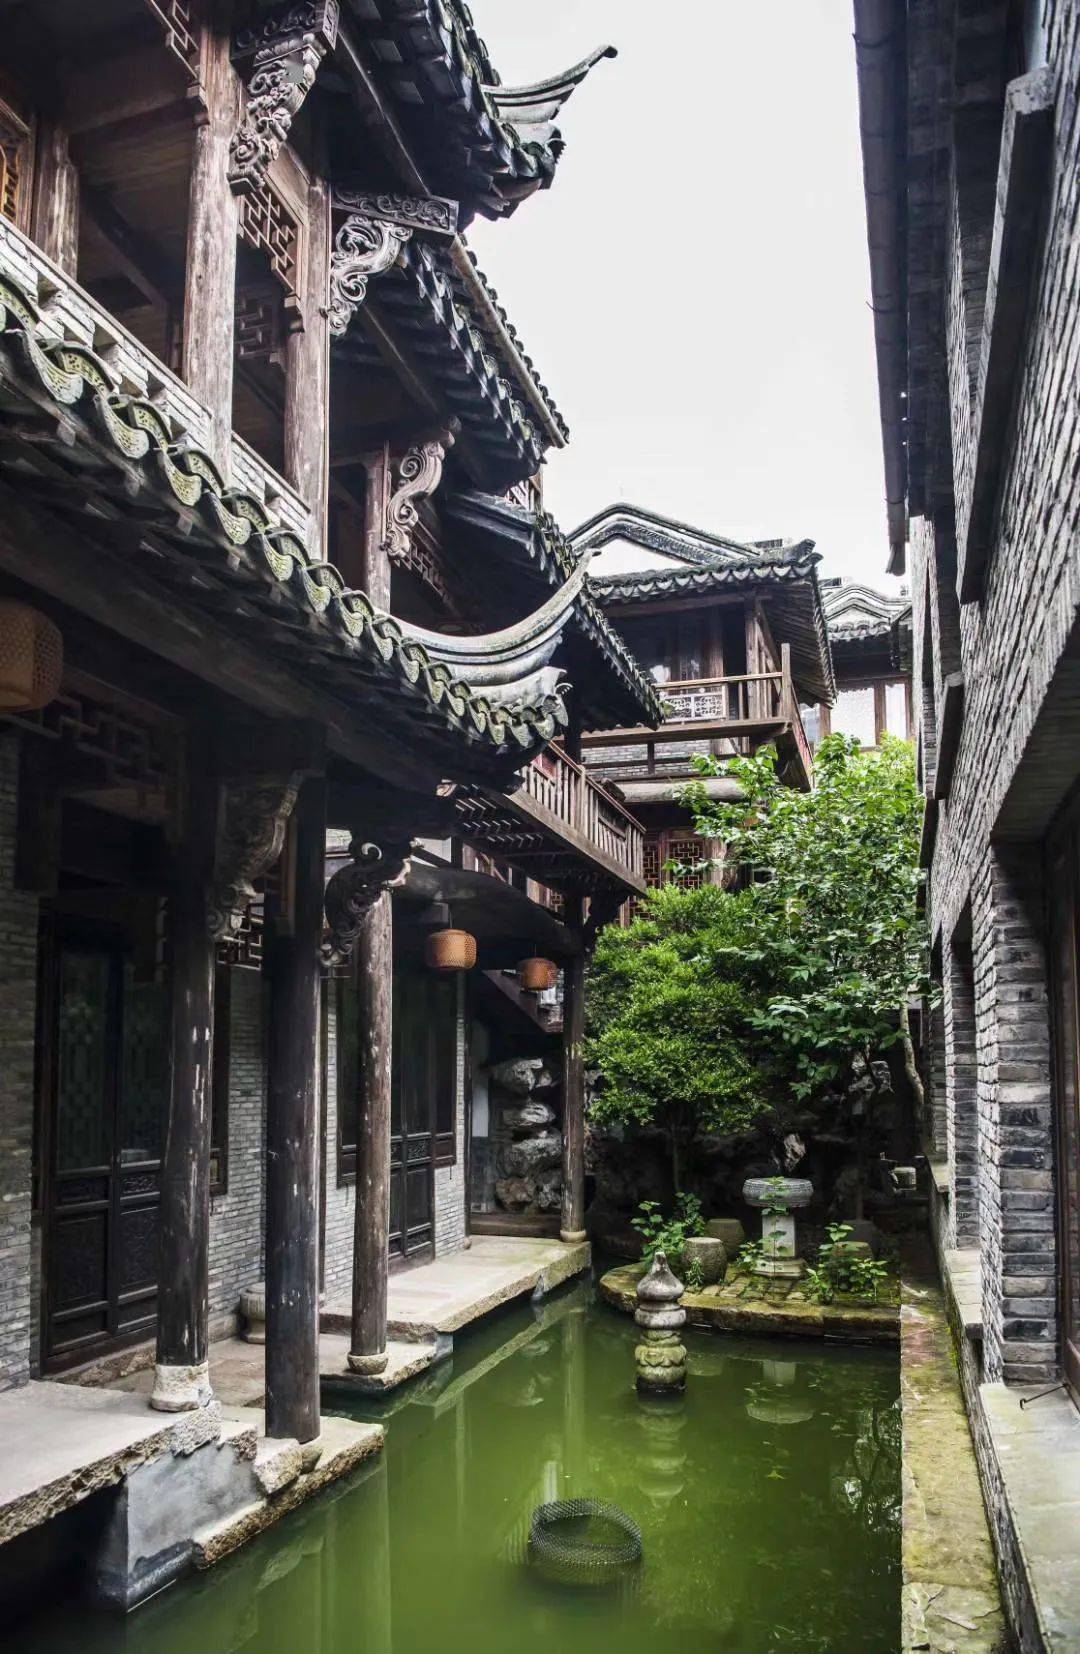 上海还有这样的园子,十余栋古建筑在此异地重生!阮仪三教授也打call